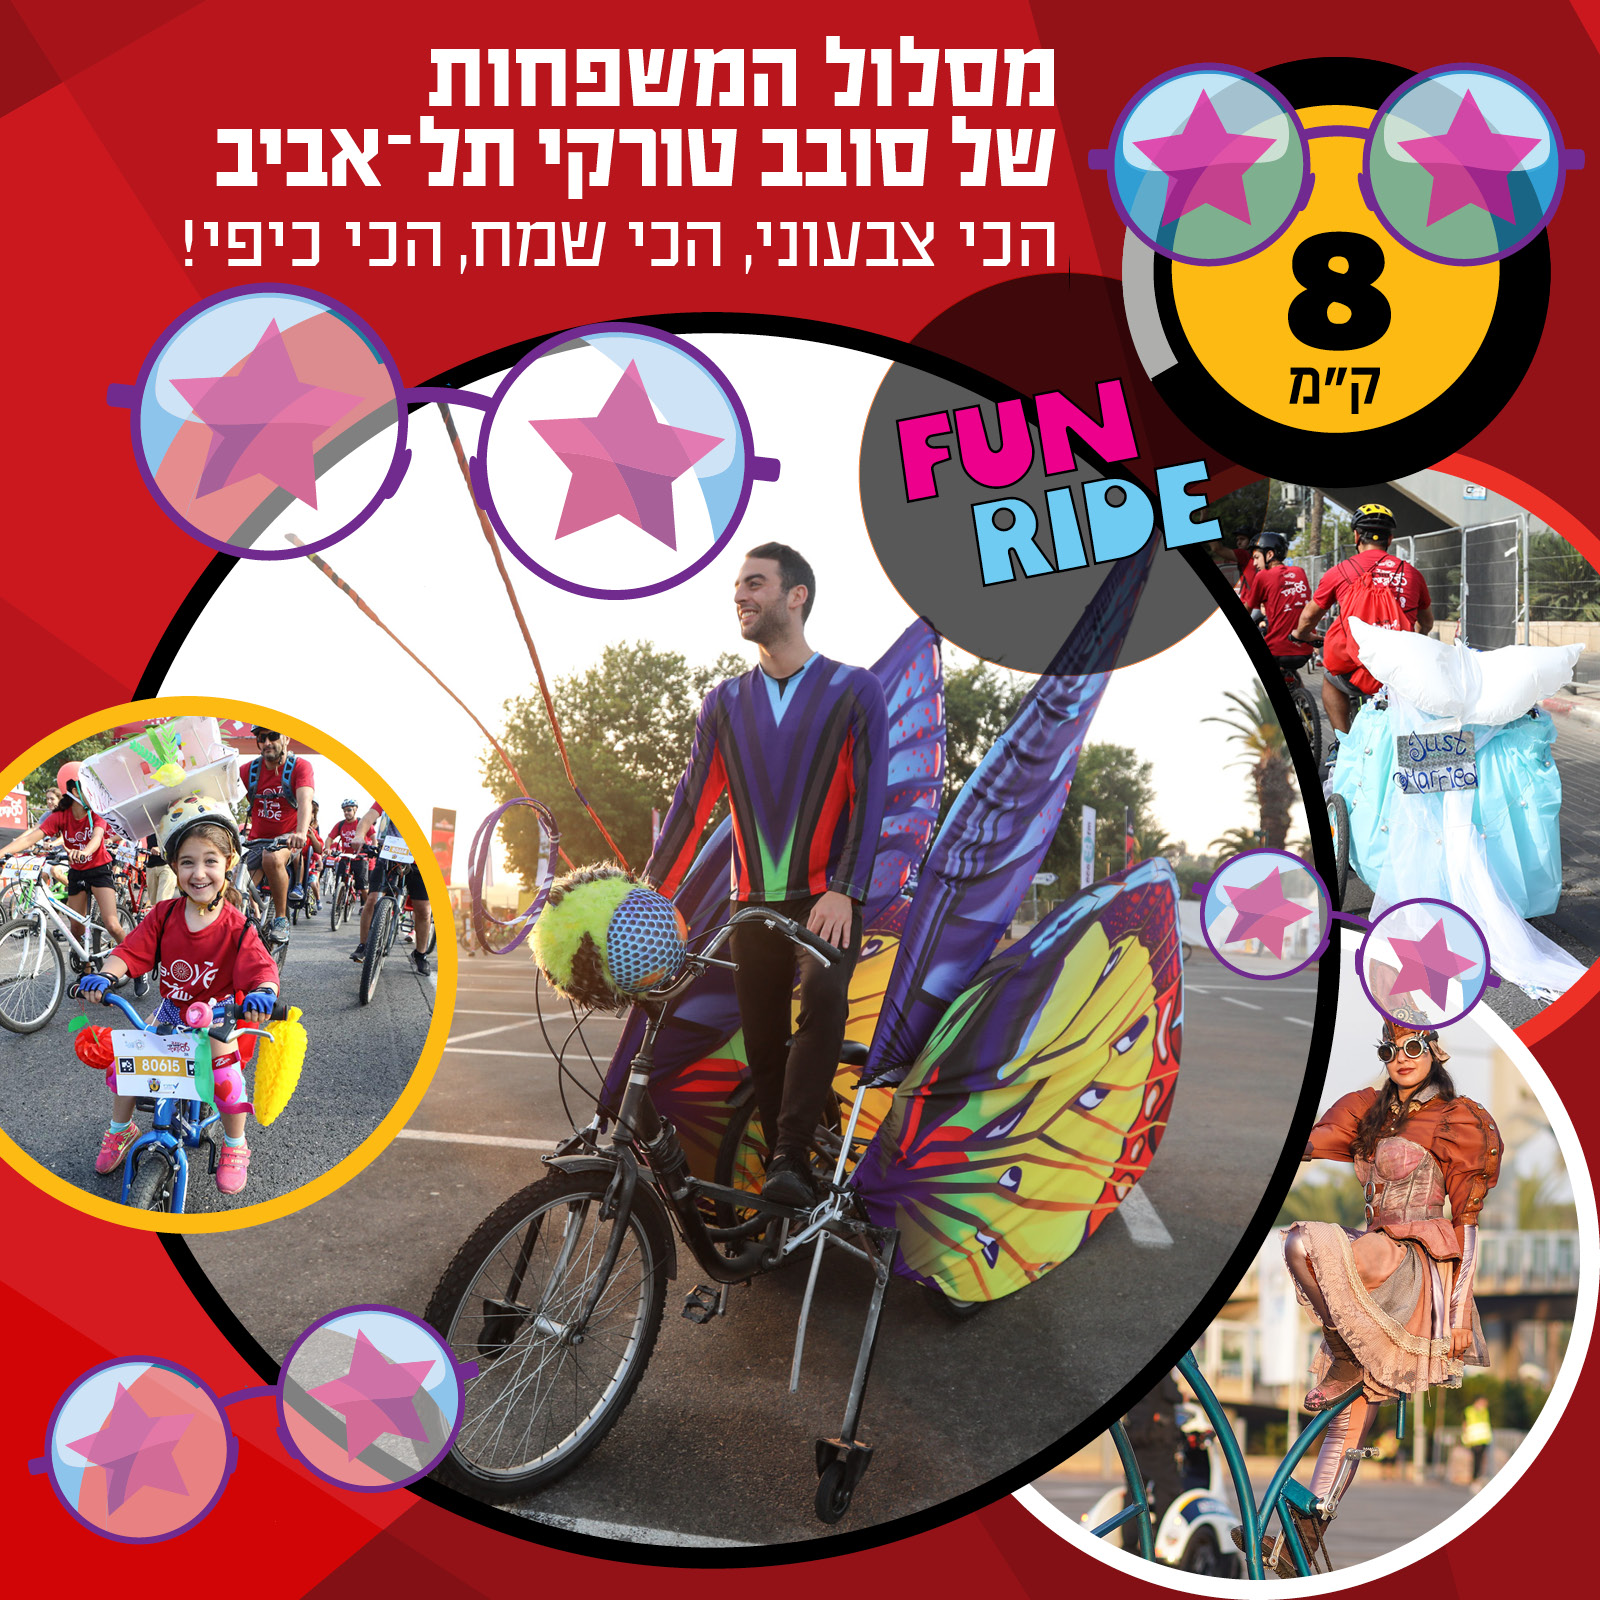 FUN RIDE 8k מסלול המשפחות של סובב טורקי תל-אביב, הכי צבעוני, הכי שמח, הכי כיפי.